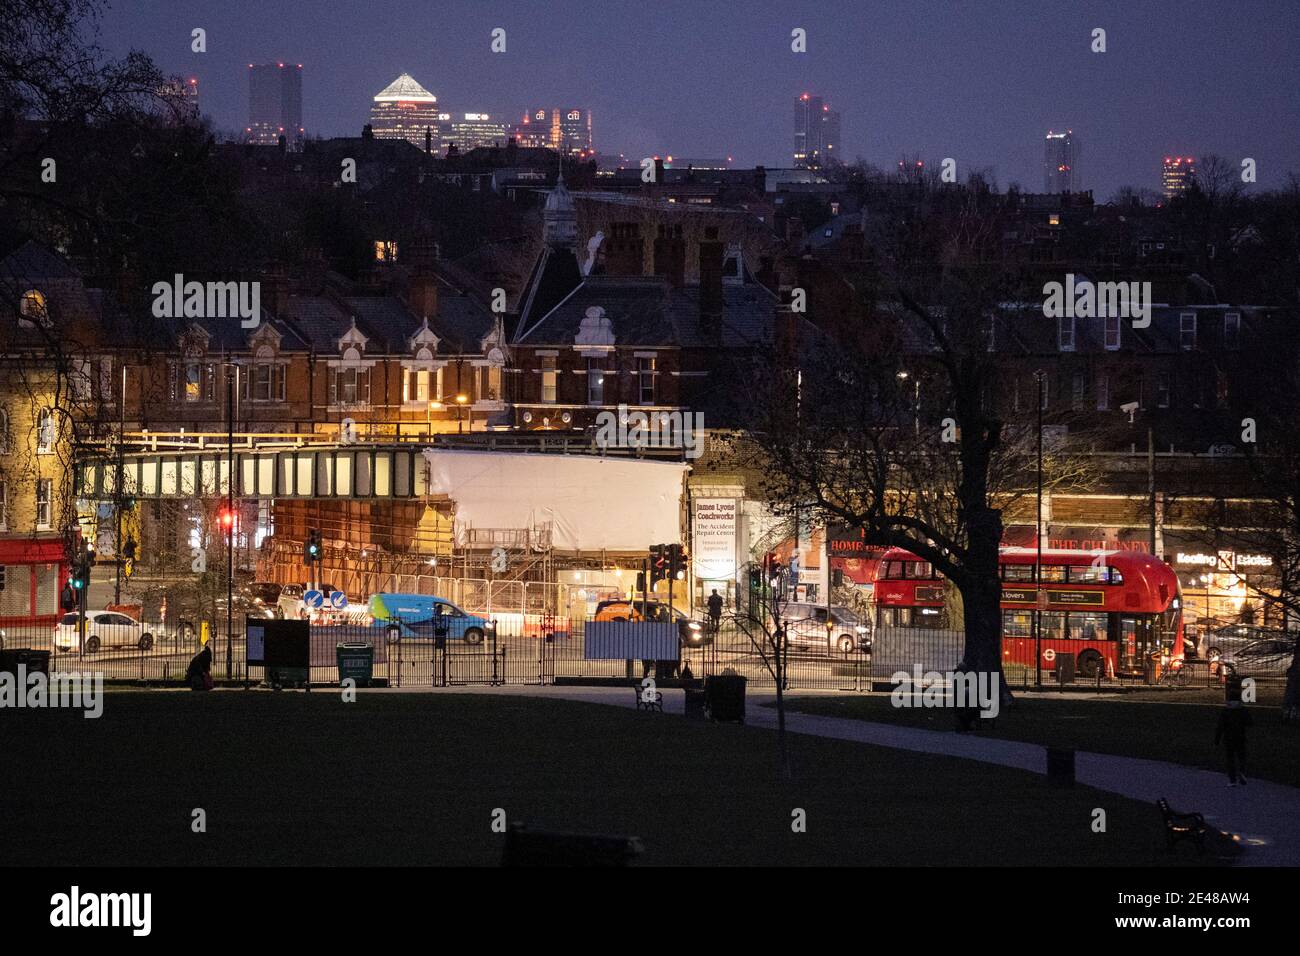 L'ora di punta della sera aumenta la quantità di traffico che passa attraverso l'incrocio stradale a Herne Hill, SE24, a sud di Londra, il 21 gennaio 2021, a Londra, Inghilterra. Herne Hill si trova tra Brixton, Dulwich Village e Camberwell e si trova sopra i comuni quartieri londinesi di Lambeth e Southwark con una comunità di circa 15,000. Foto Stock